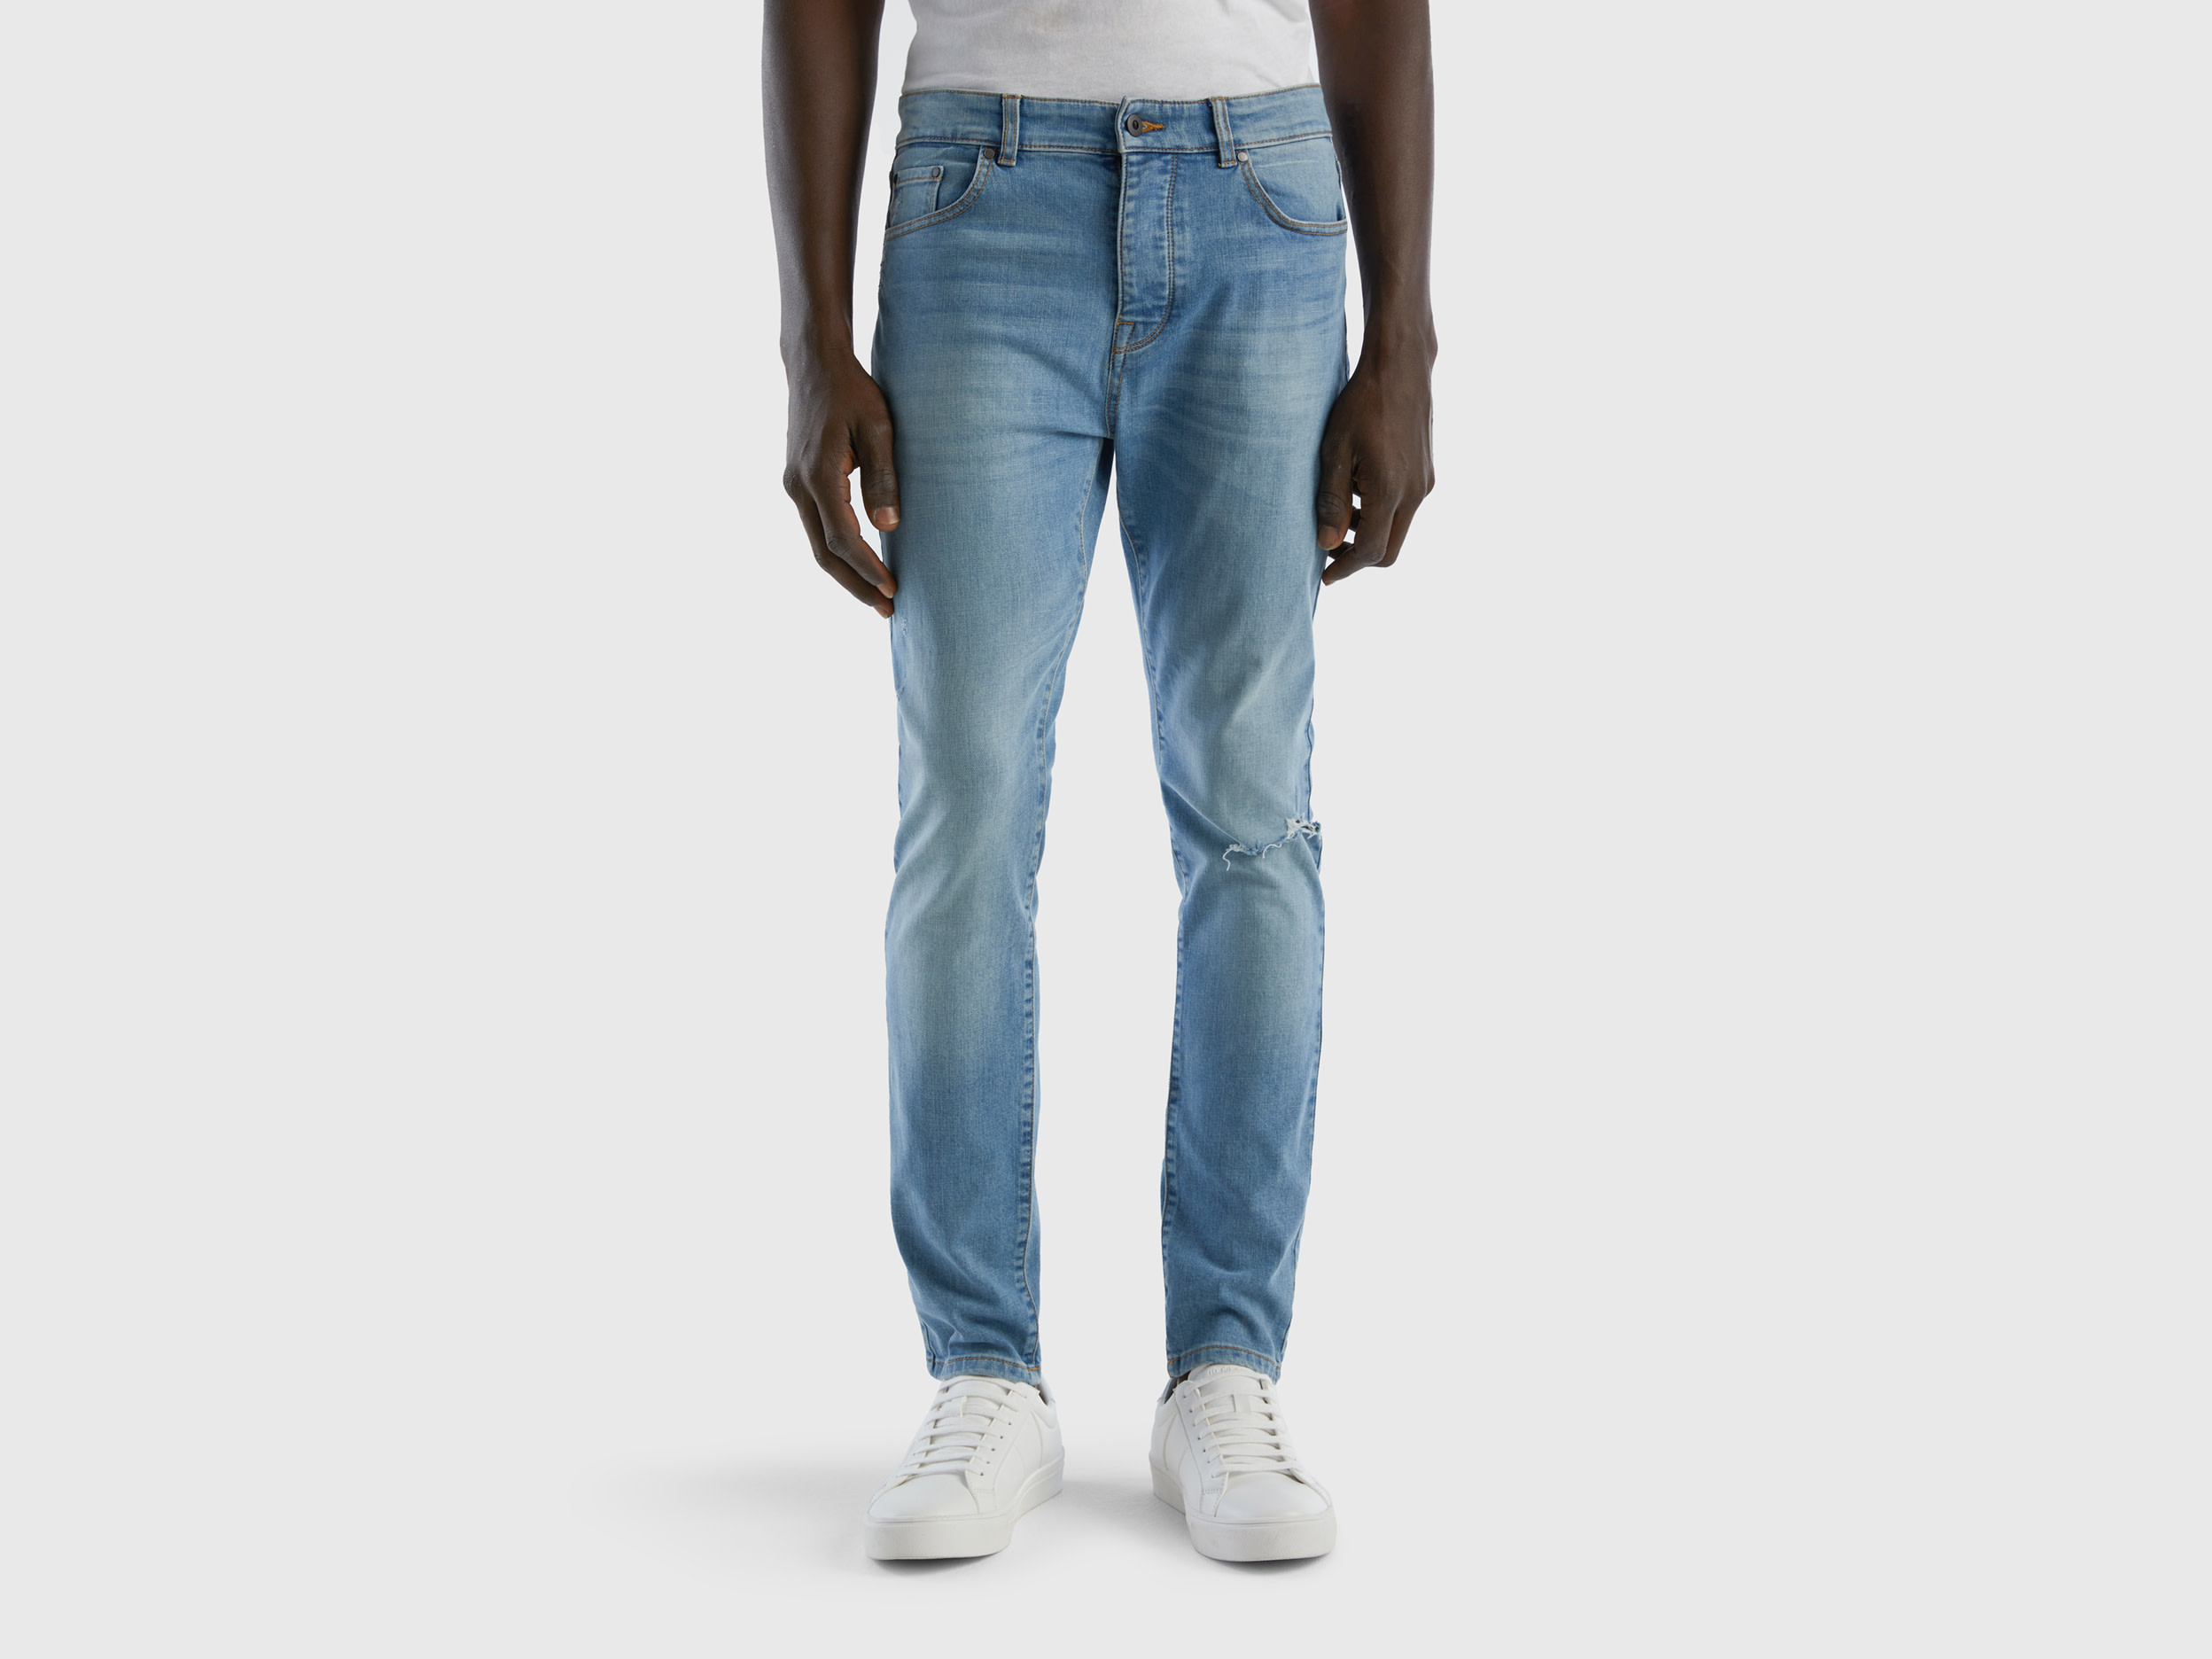 Benetton, Skinny Fit Jeans, size 36, Blue, Men